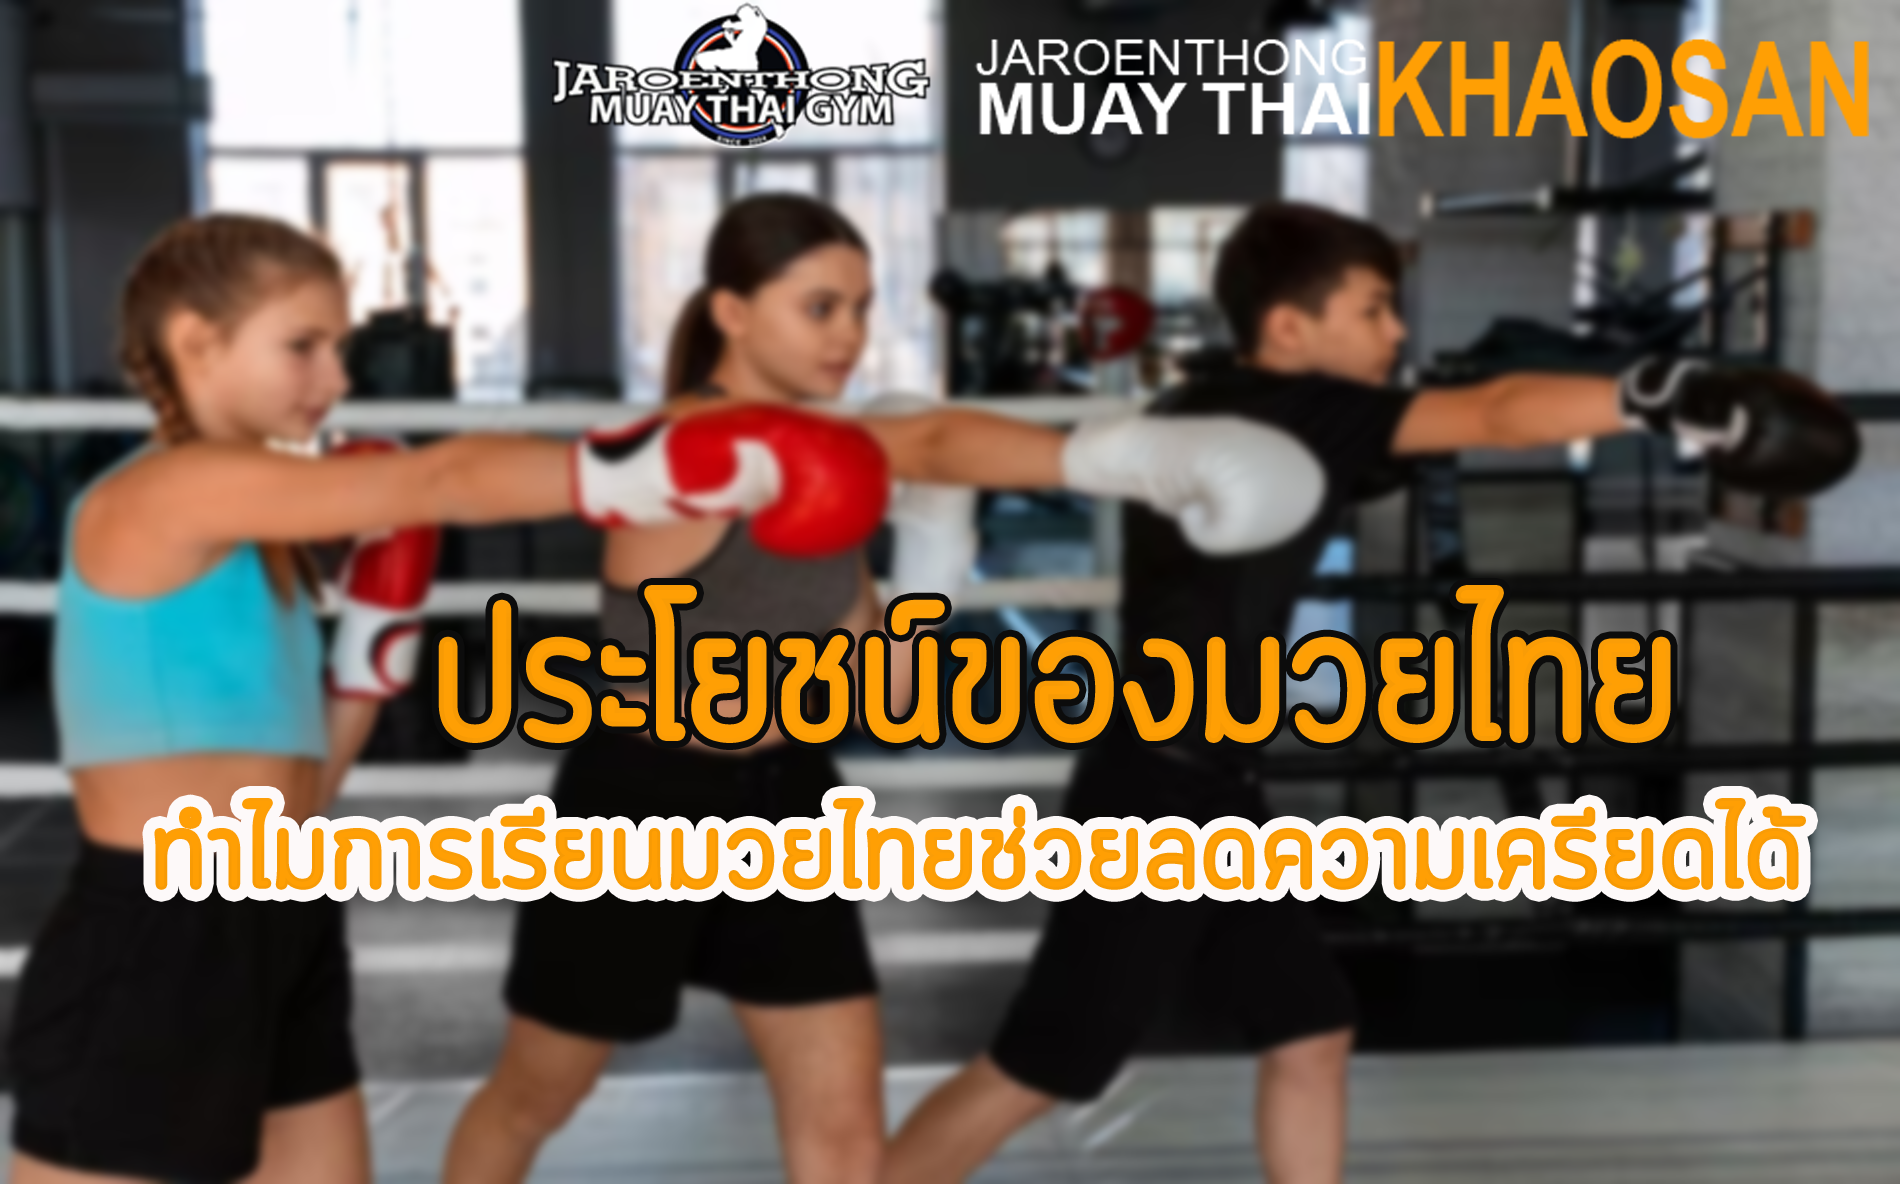 ประโยชน์ของมวยไทย ทำไมการเรียนมวยไทยช่วยลดความเครียดได้